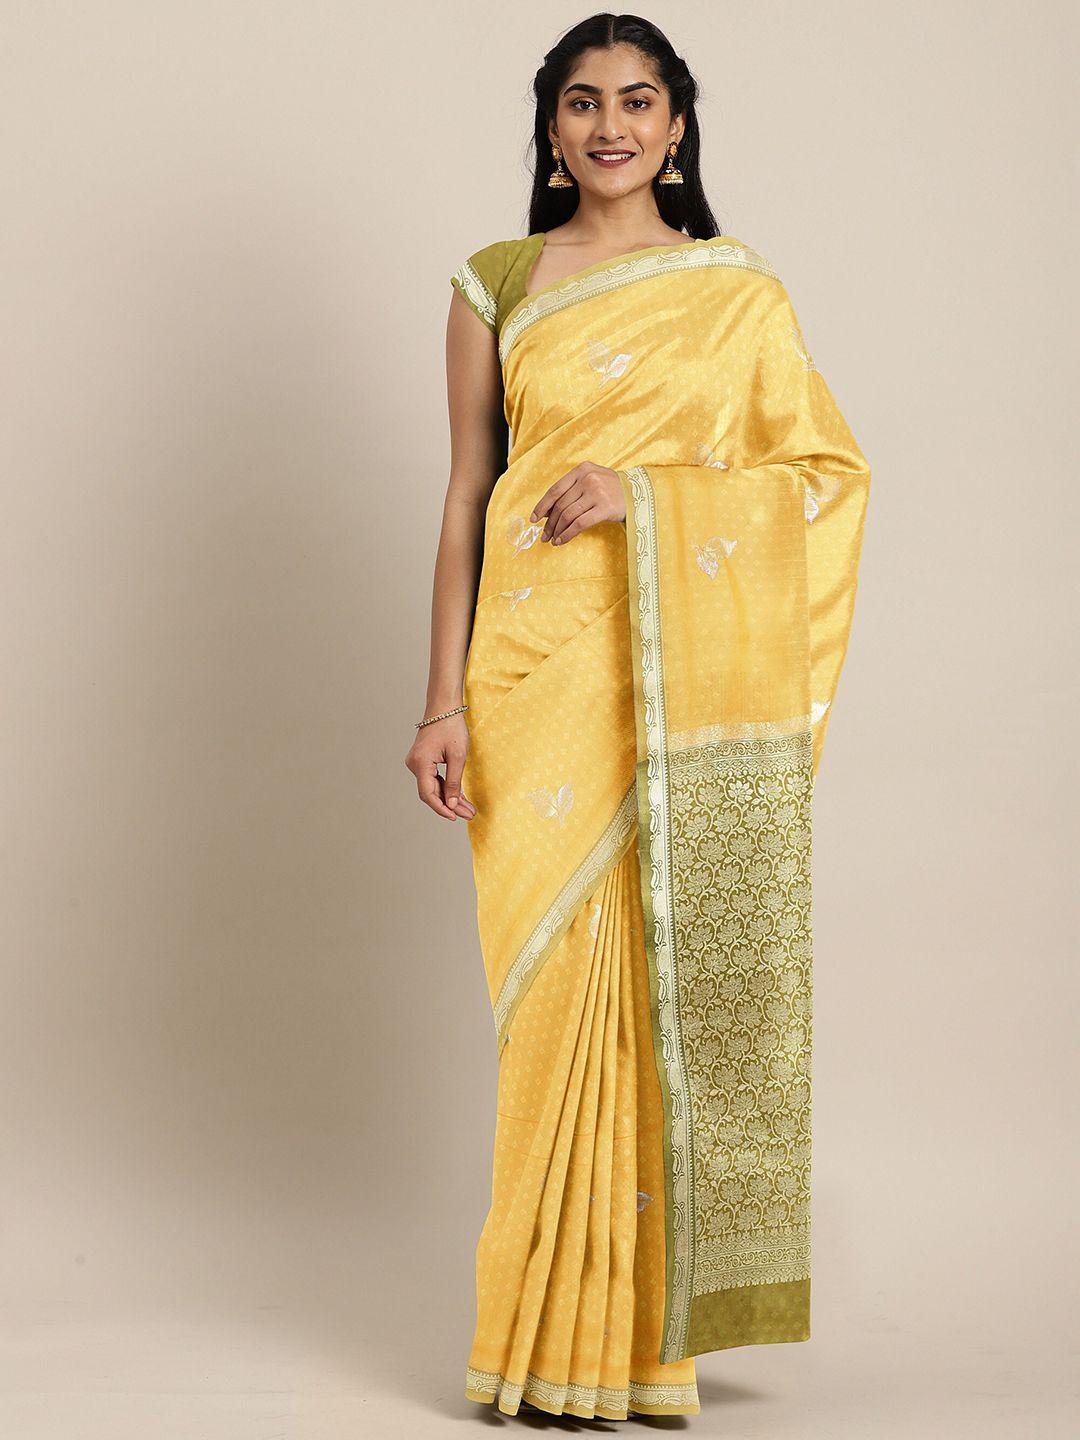 the chennai silks yellow & green floral art silk saree